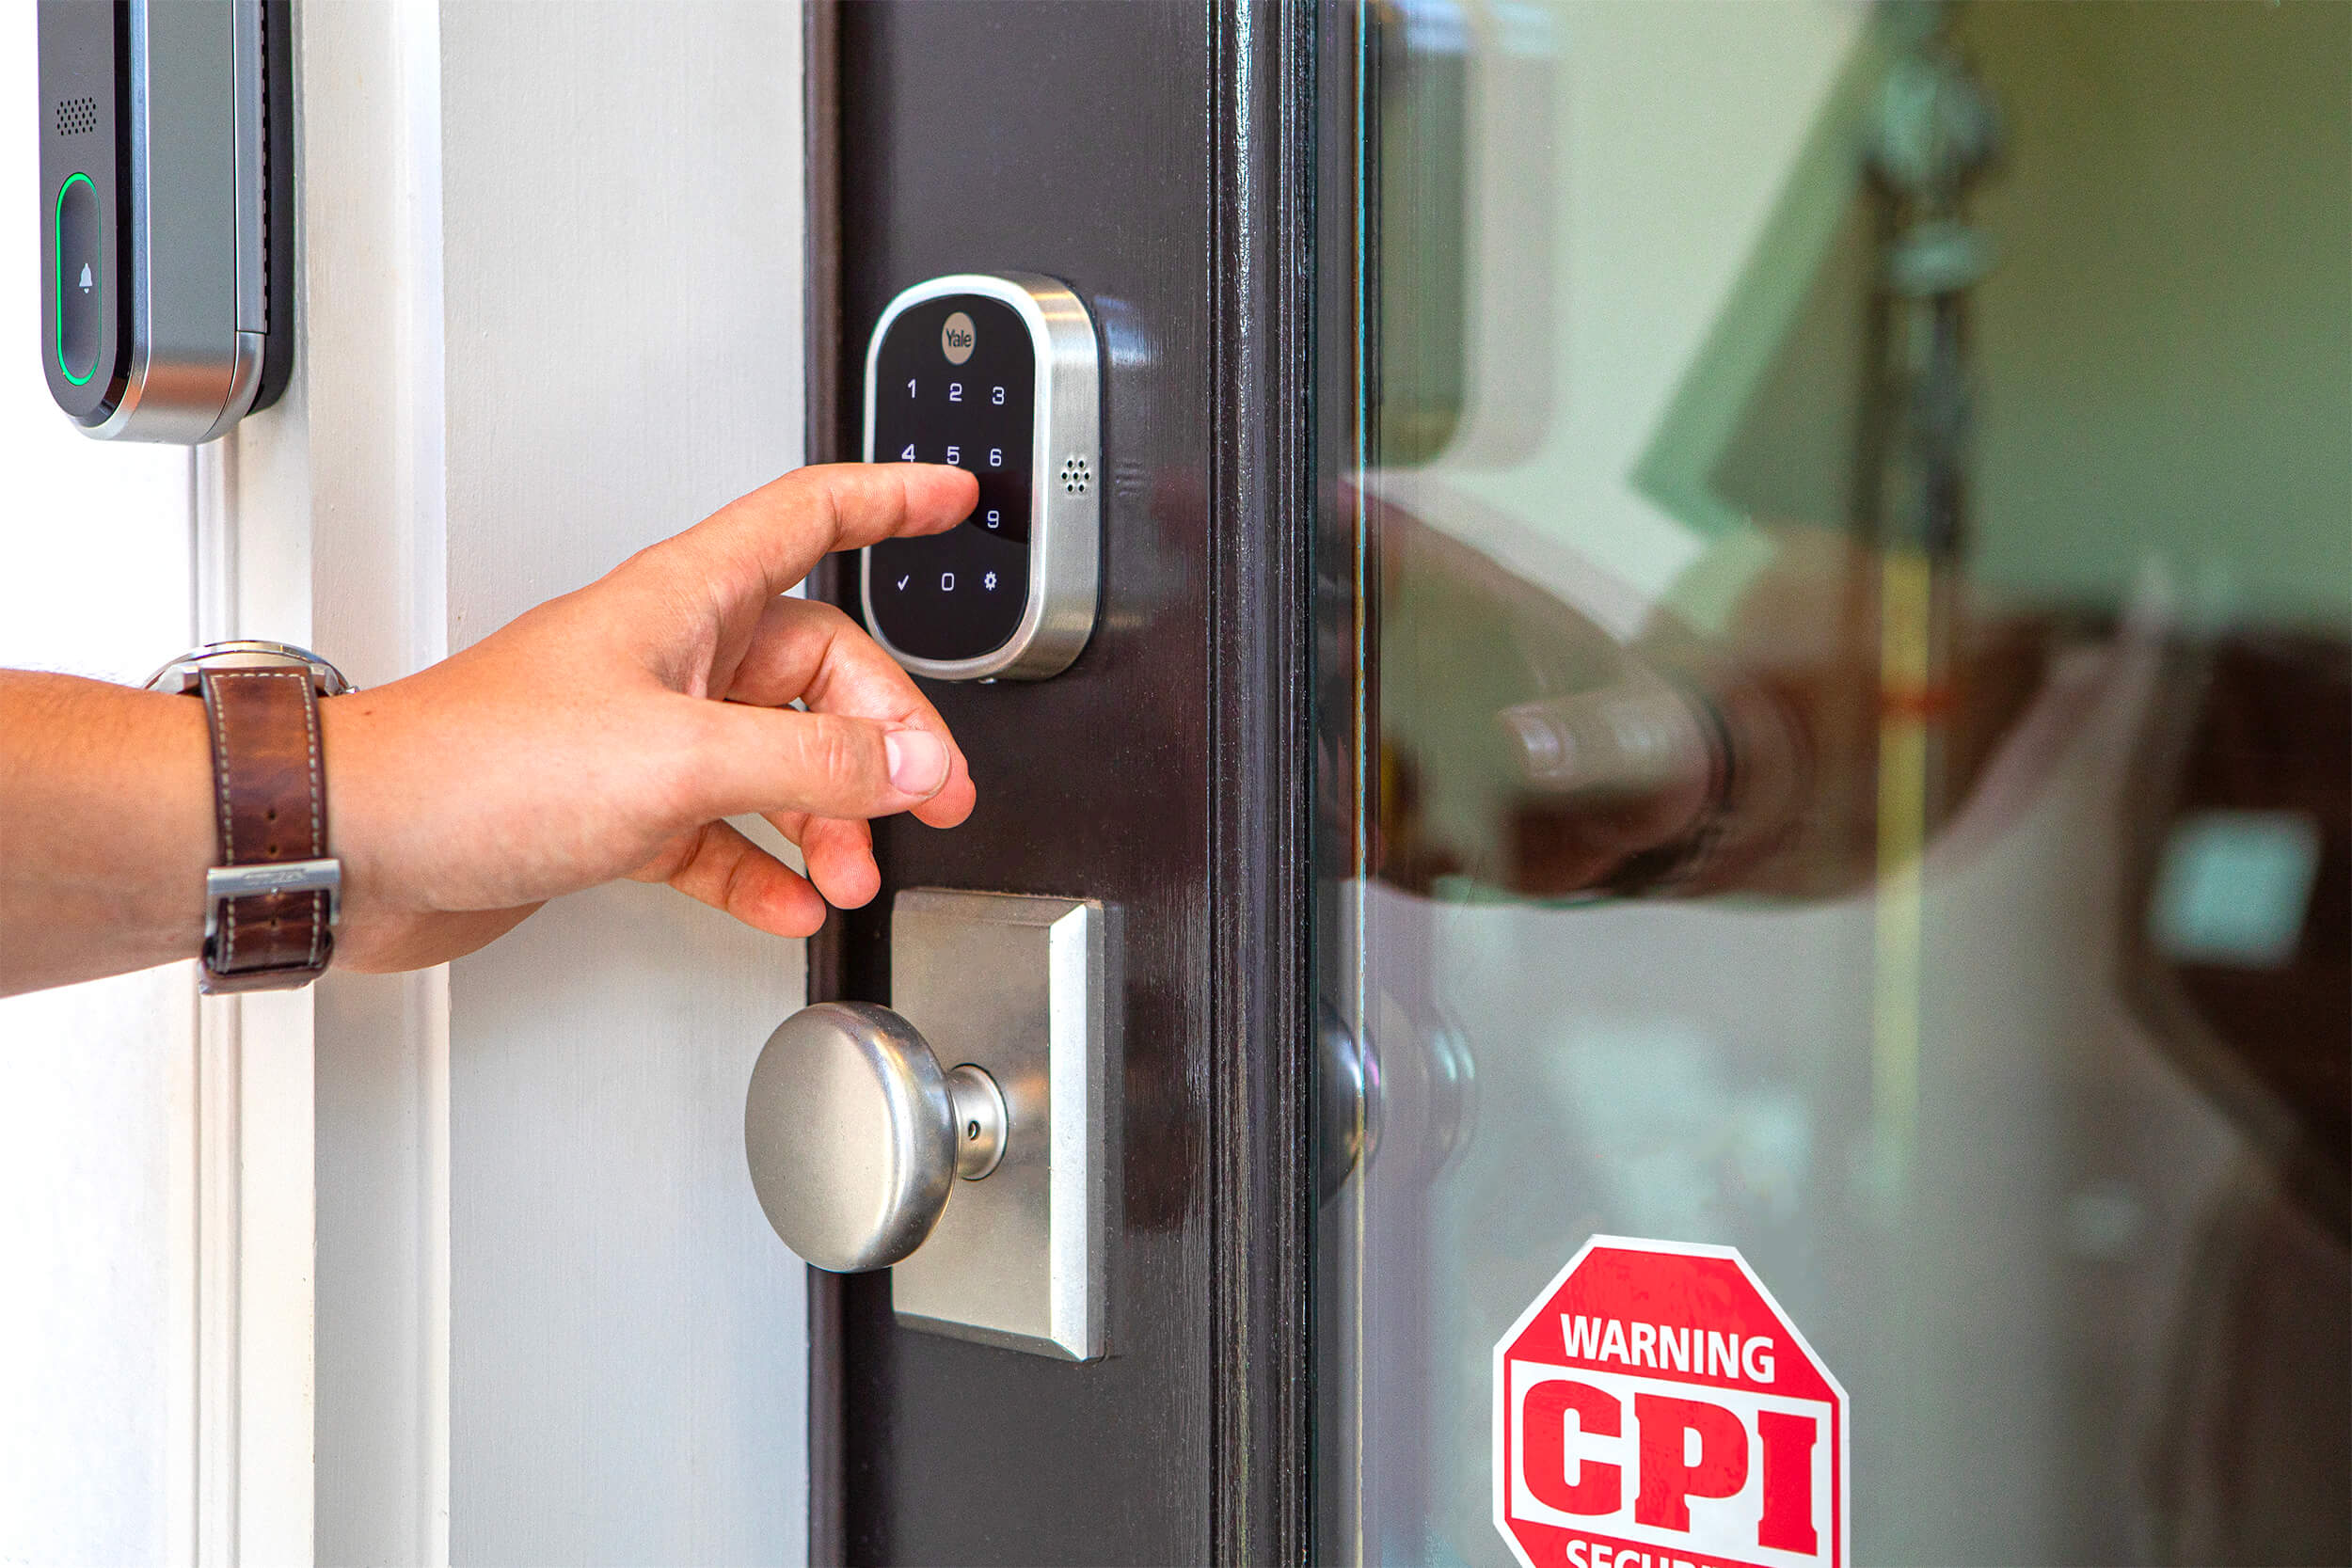 CPI Security Smart Lock